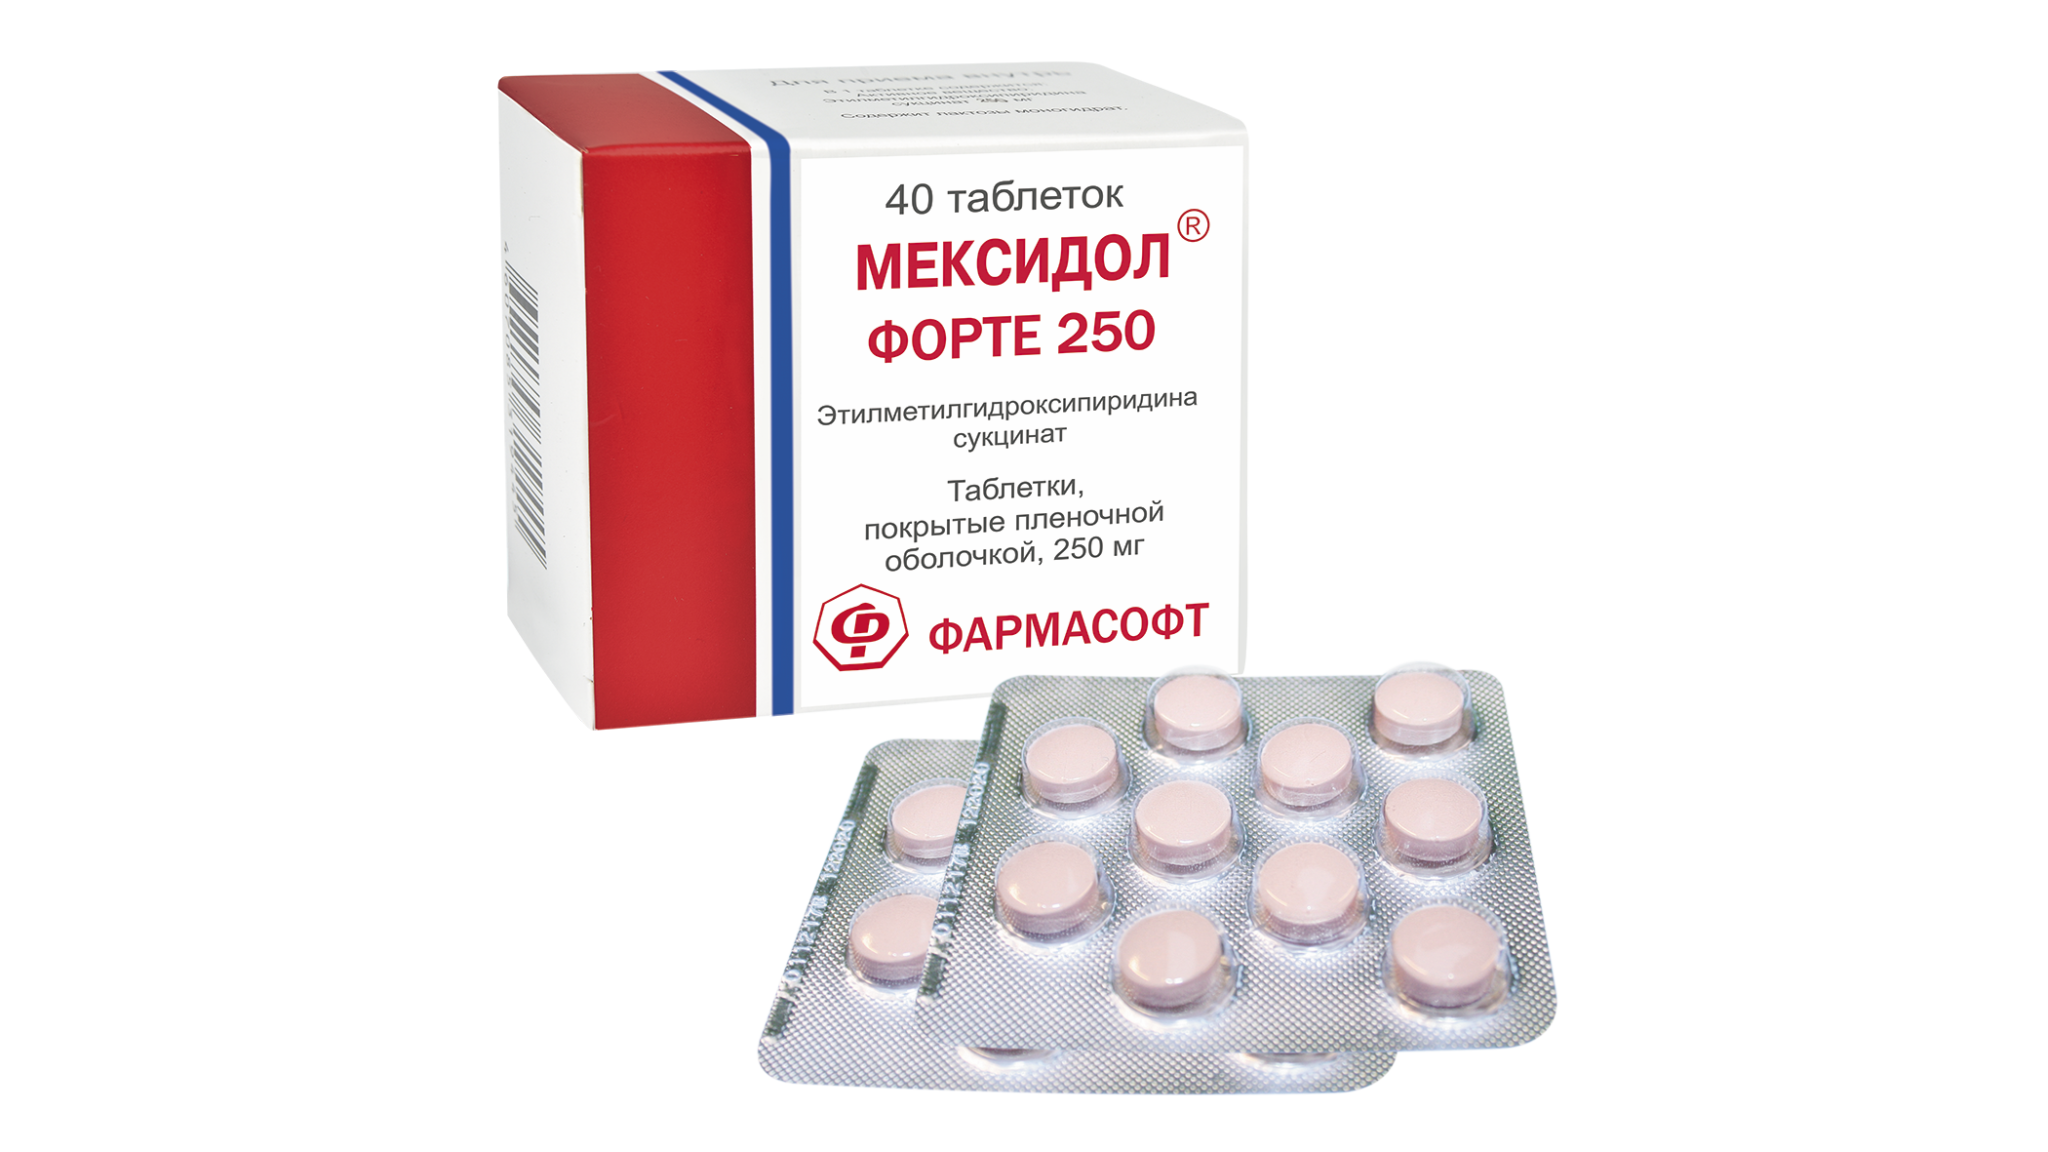 Новые высоты препарата Мексидол®: двойная дозировка в одной таблетке .